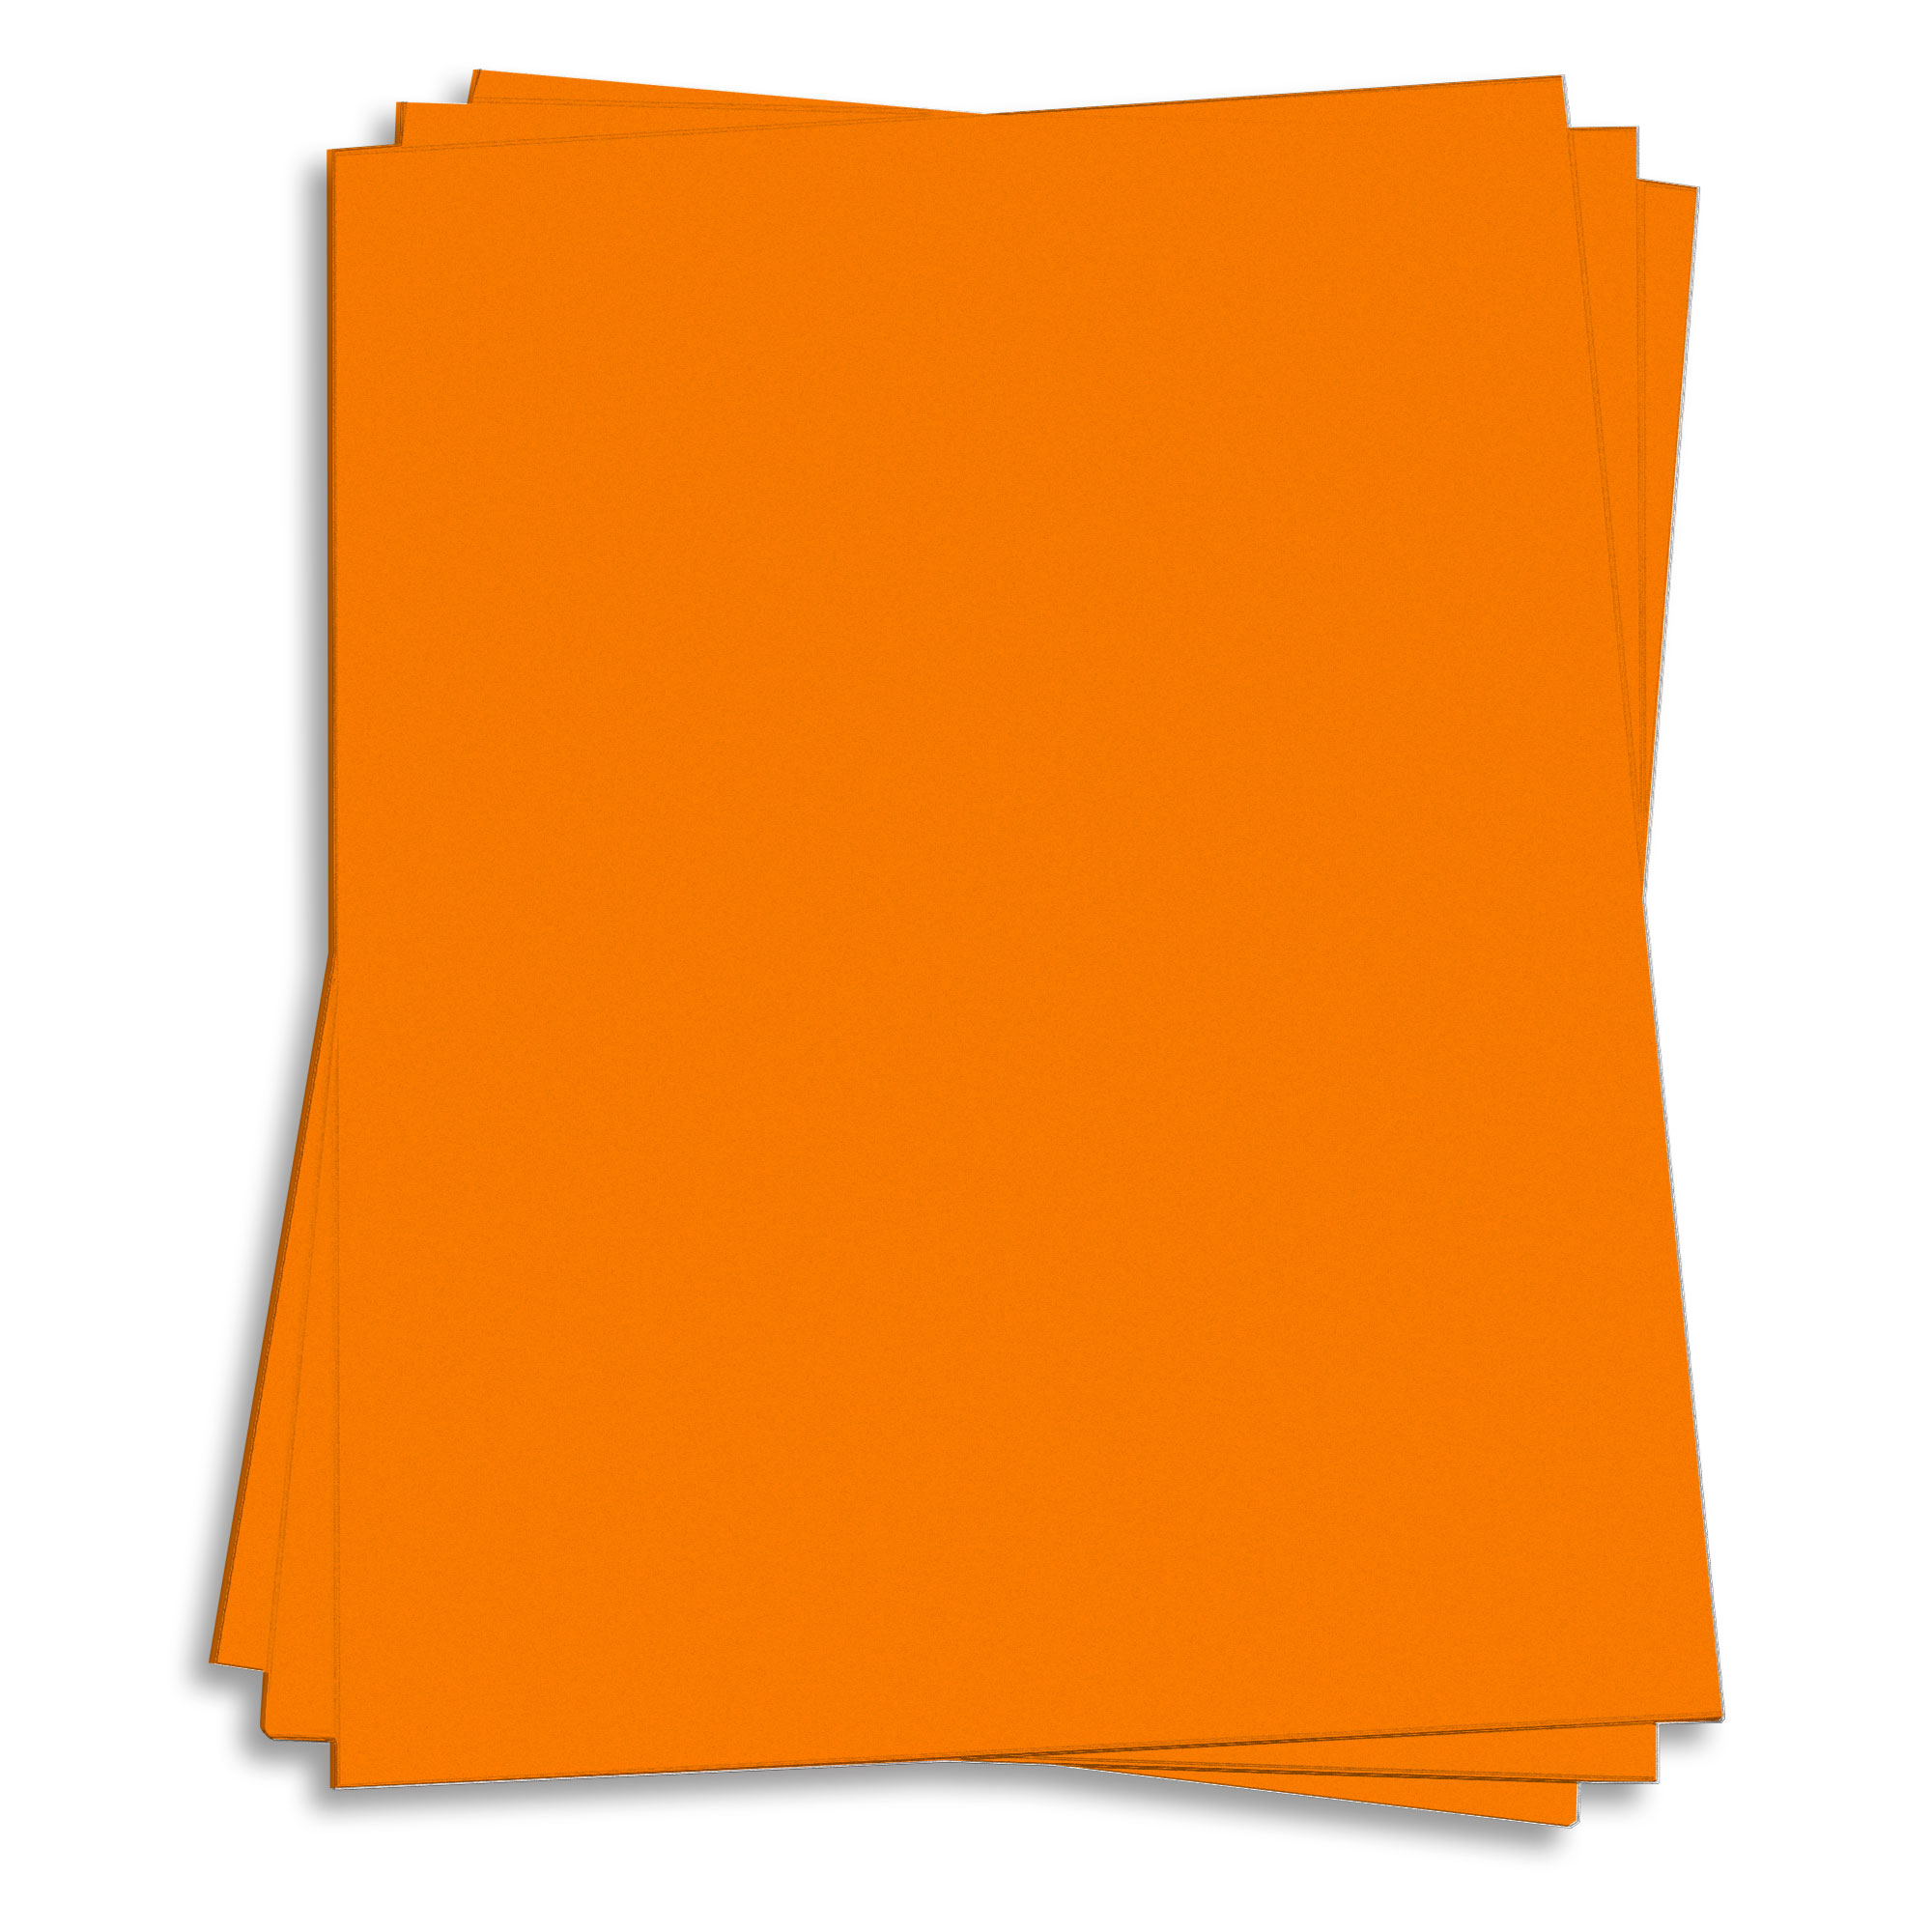 Cosmic Orange Card Stock - 8 1/2 x 11 65lb Cover